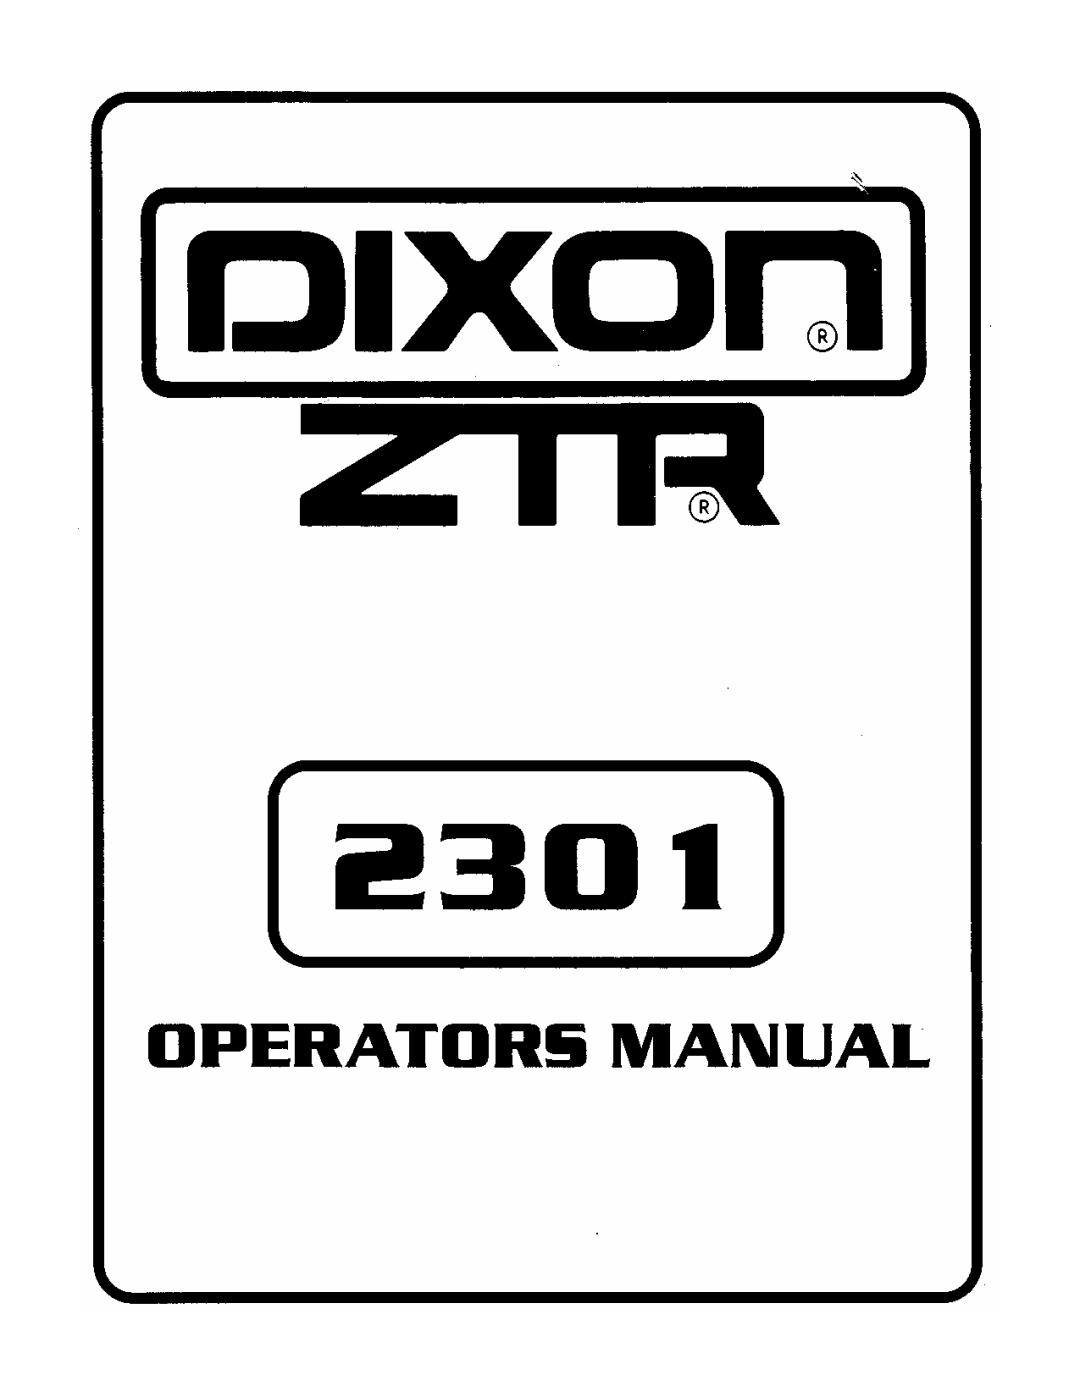 Dixon 2301 manual 